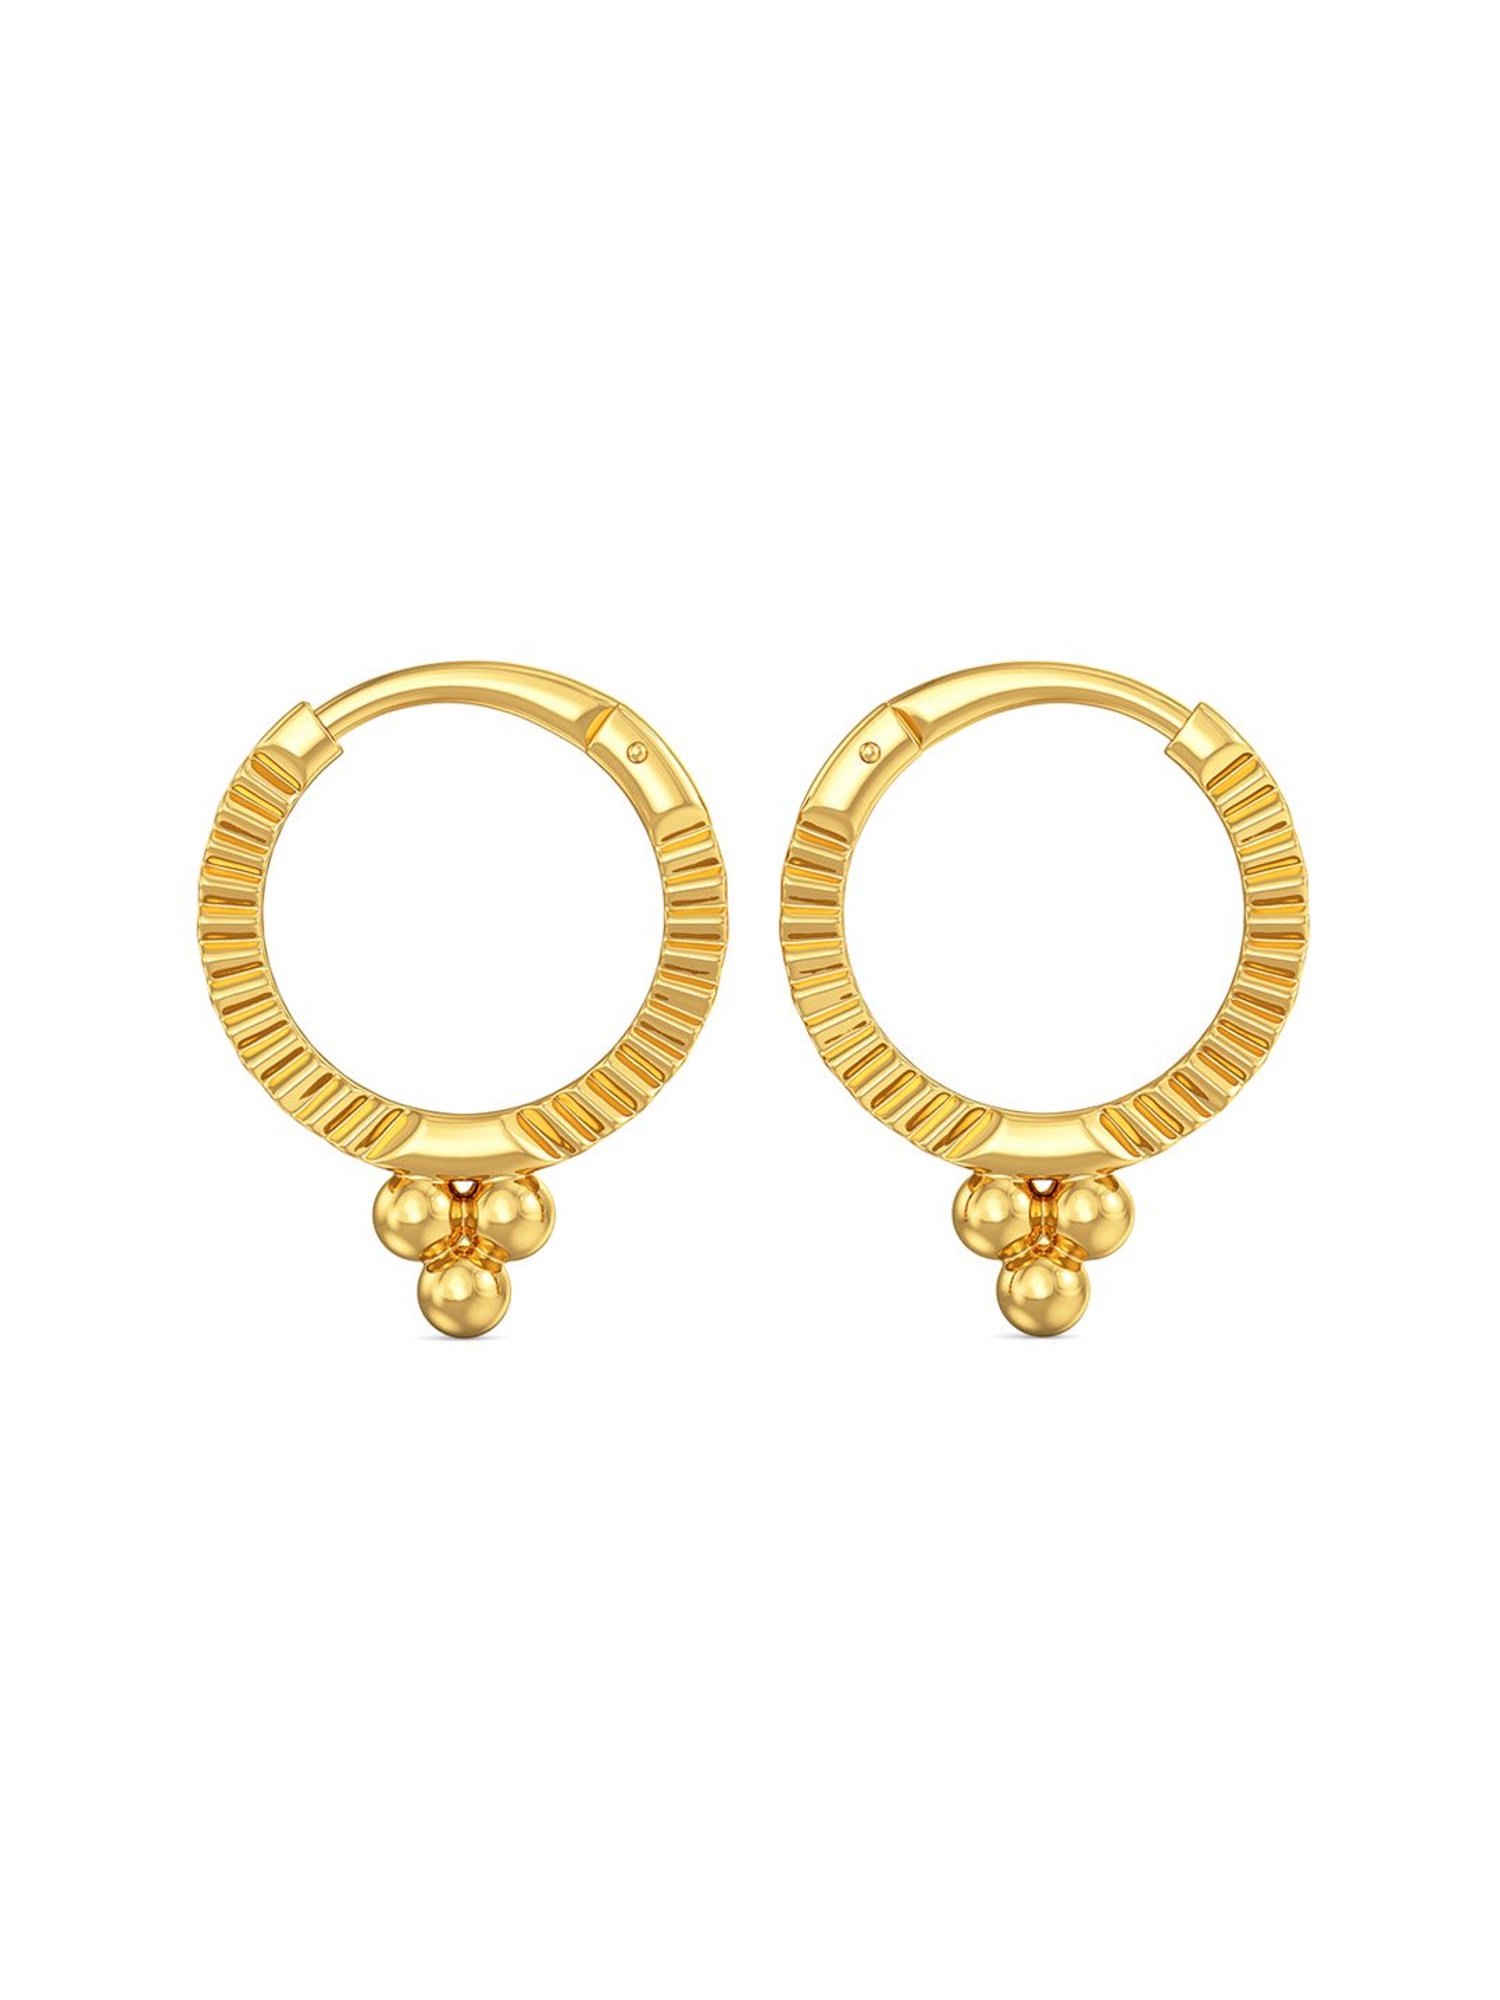 Buy R.S Jewelery Stud / Ear Rings / Women Earrings / Studs For Women Combo  / Thoodu For Womens Combo - Orgoshops